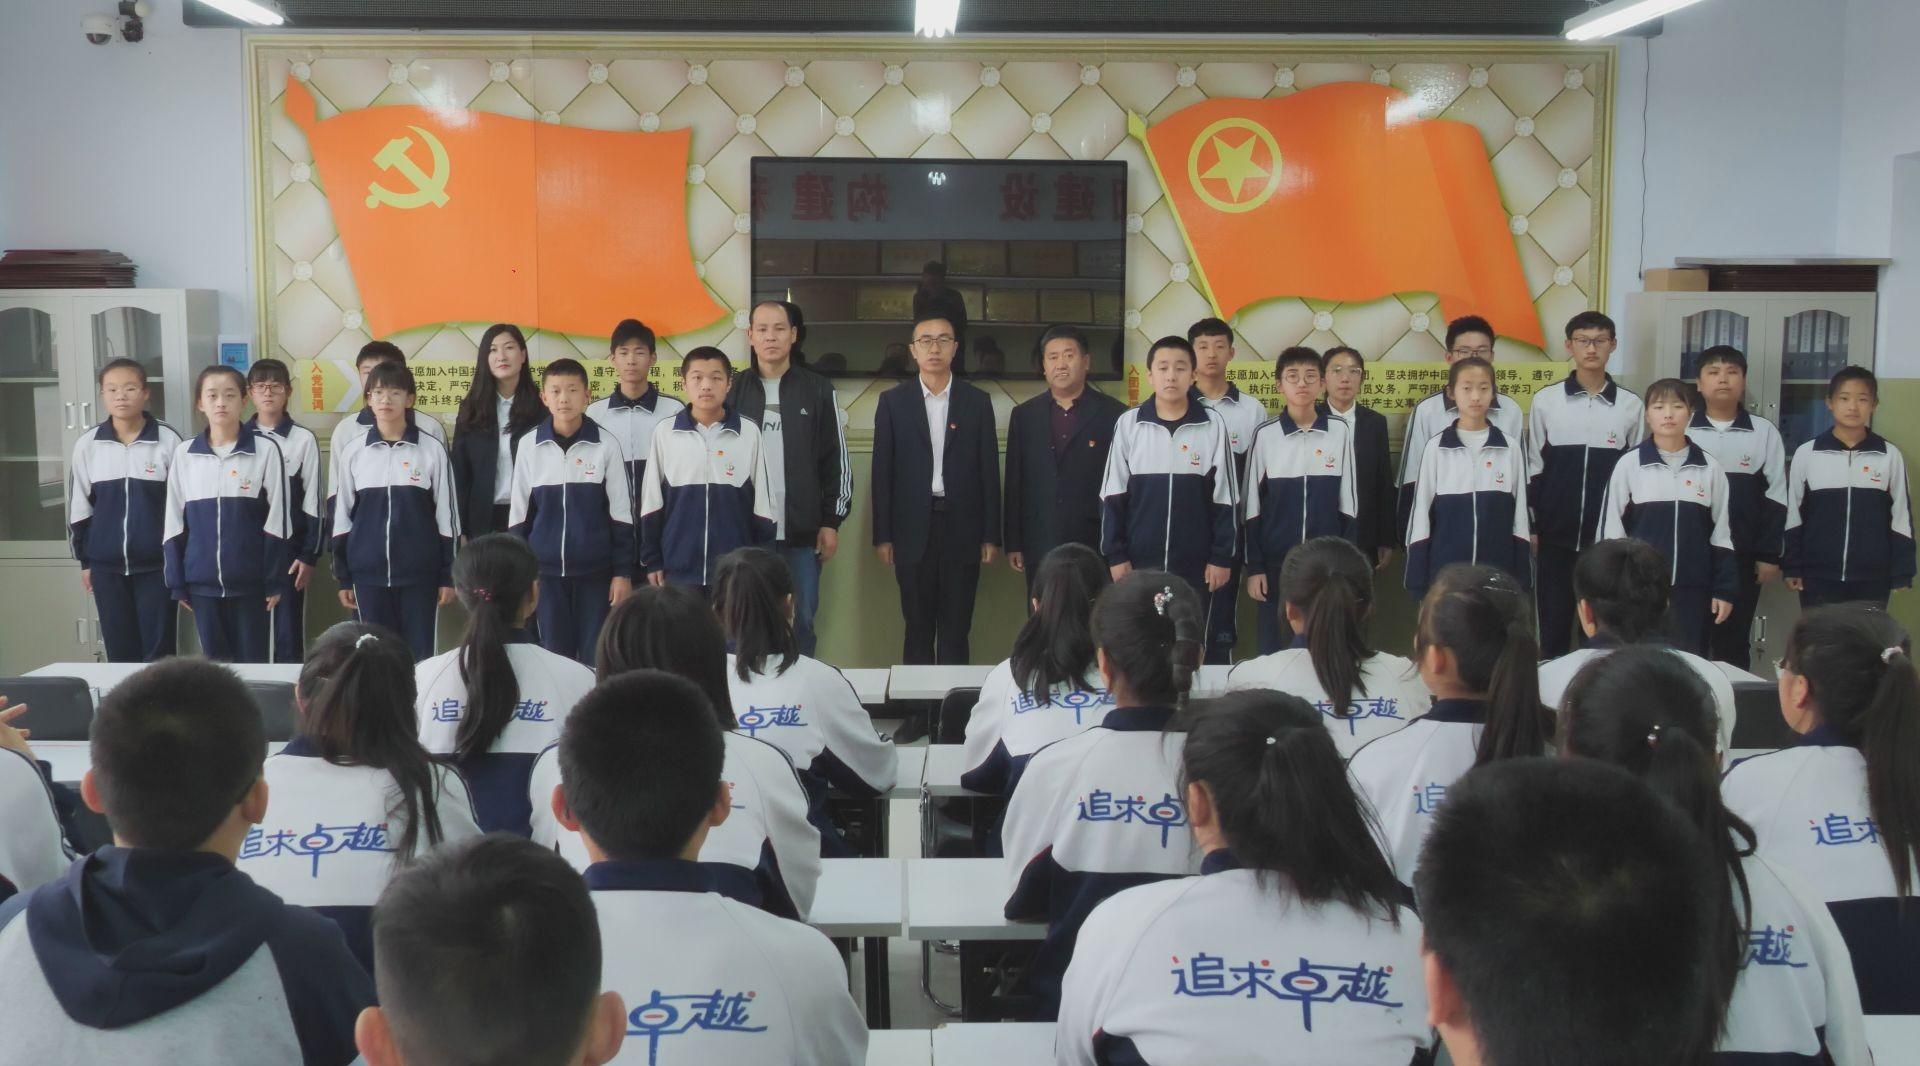 尚义县青年掀起唱团歌活动